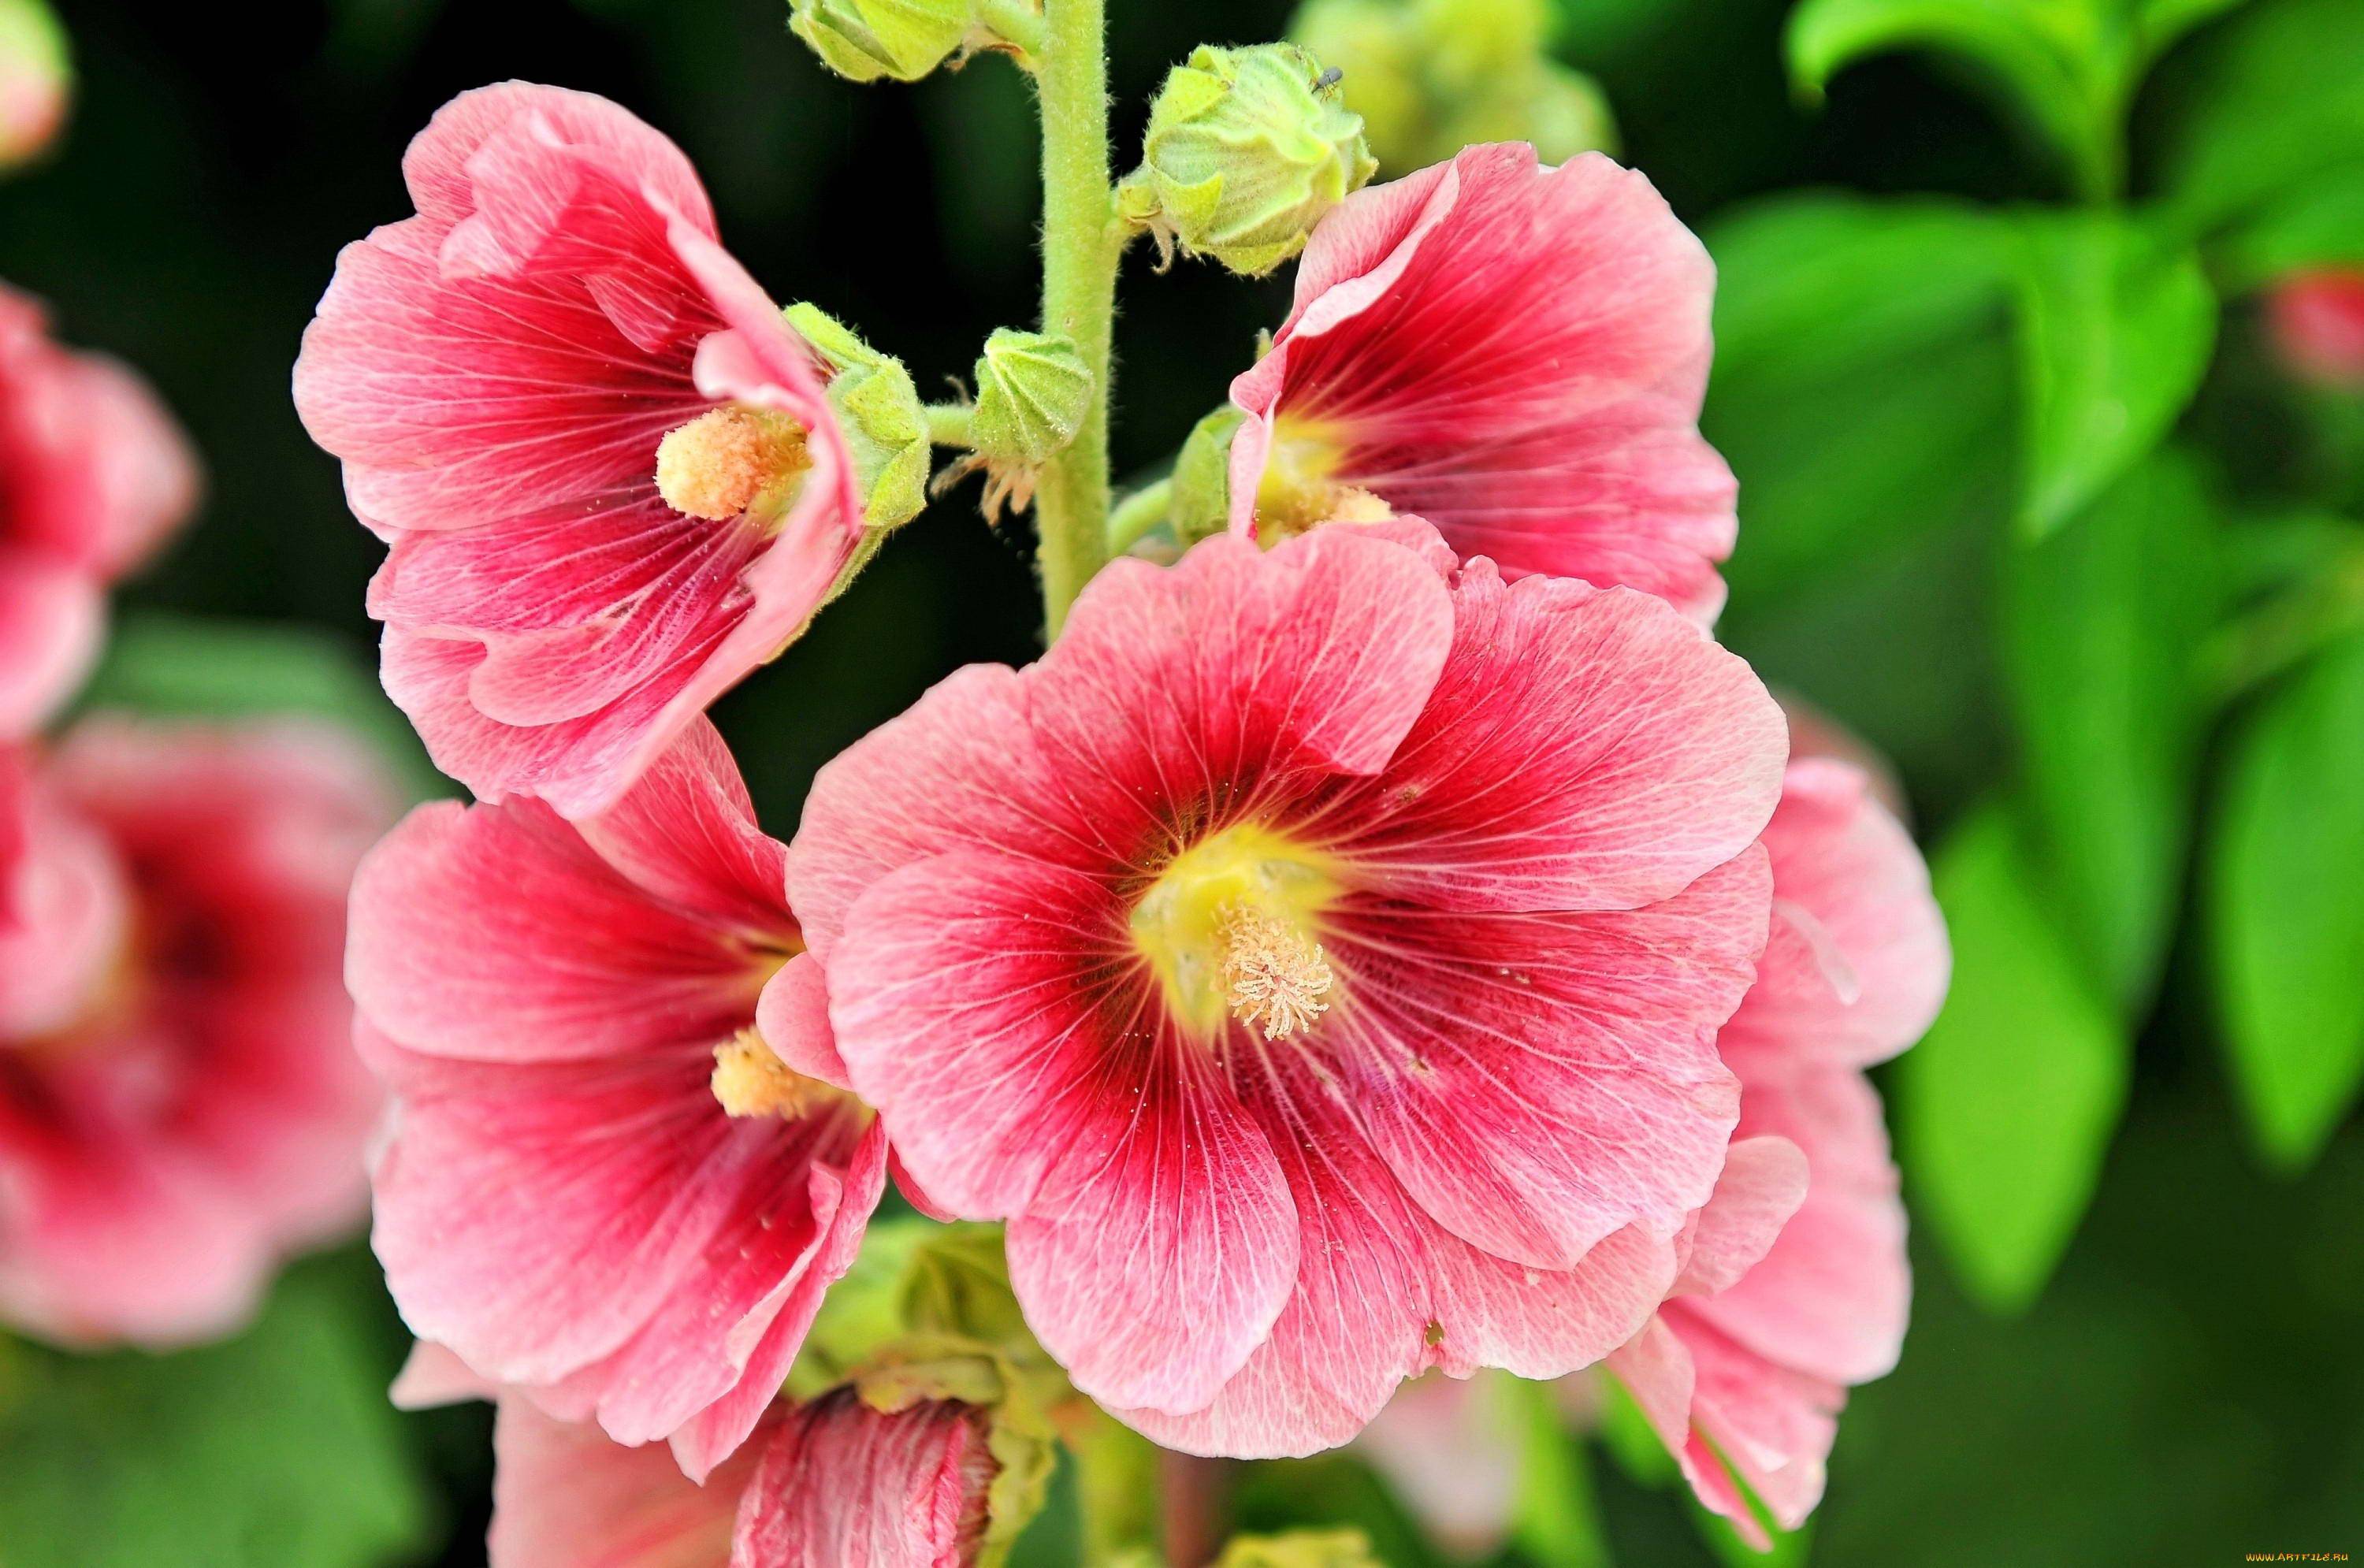 Штокроза (65 фото): описание многолетних сортов цветка. в чем различия с мальвой? как вырастить штокрозу розовую в саду? болезни и вредители